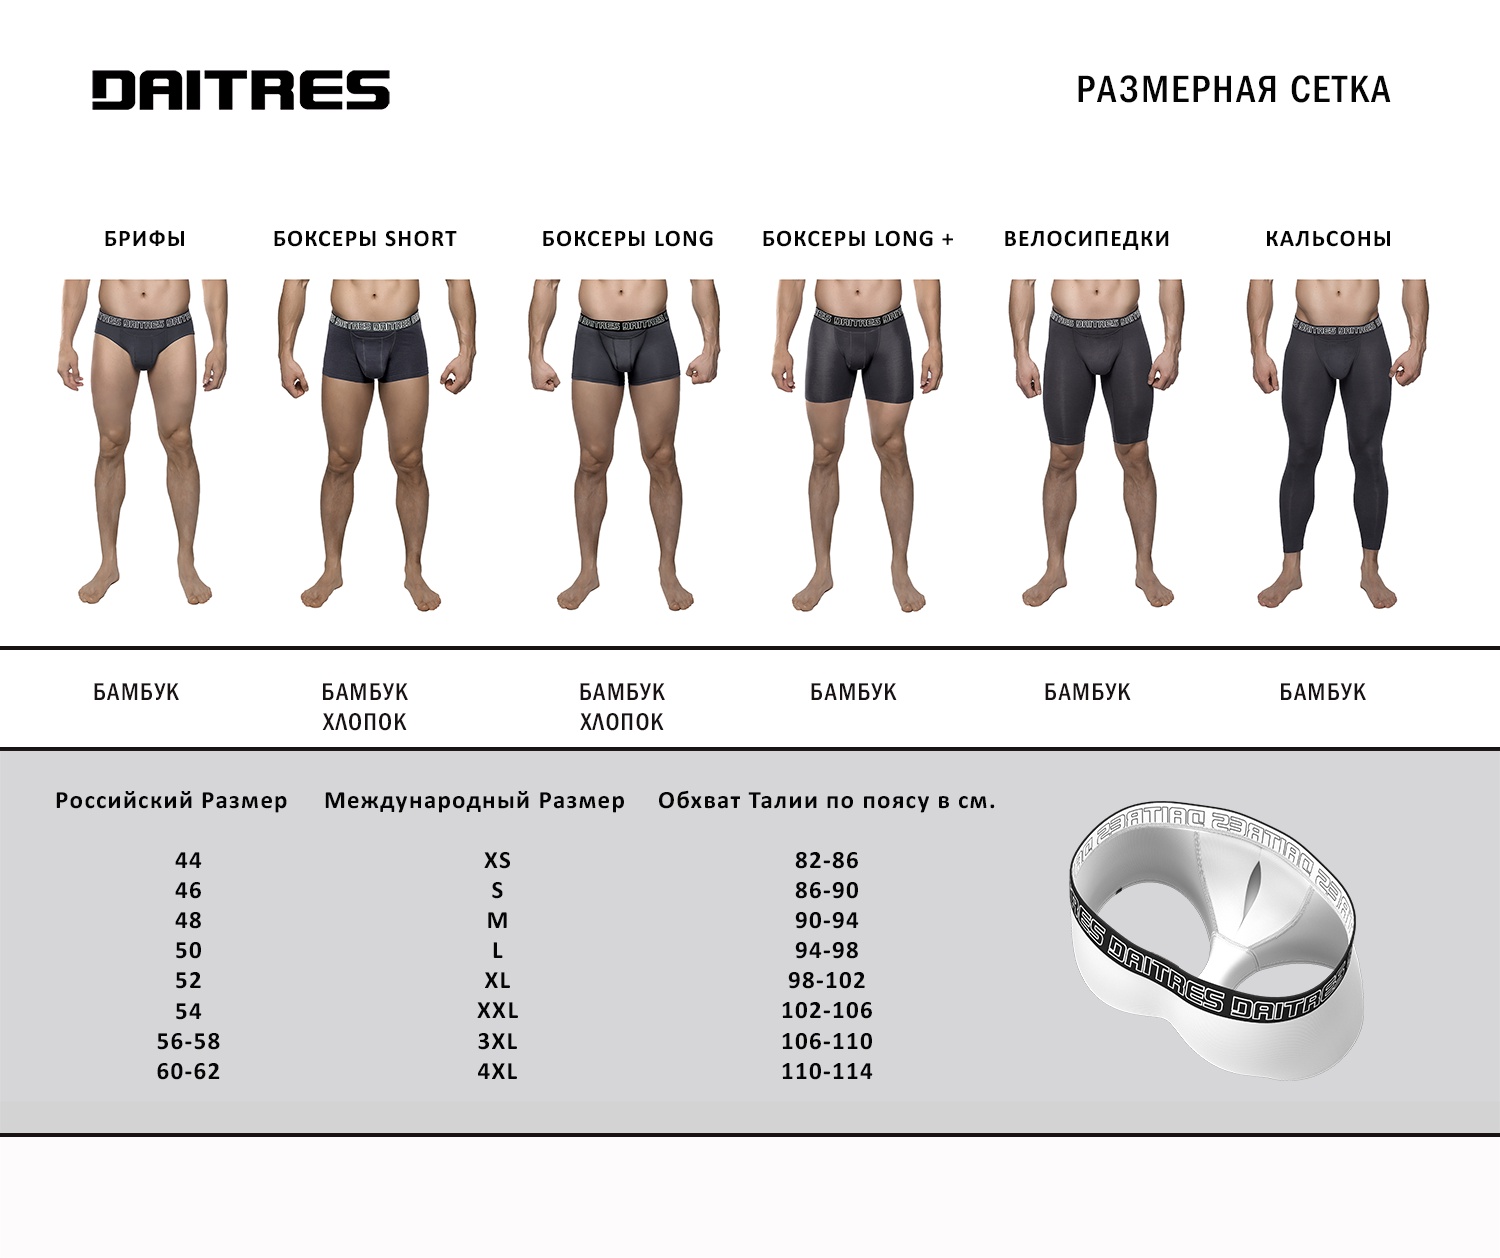 Как определить размер нижнего мужского белья: Размеры мужского нижнего белья - таблица размеров для мужчин